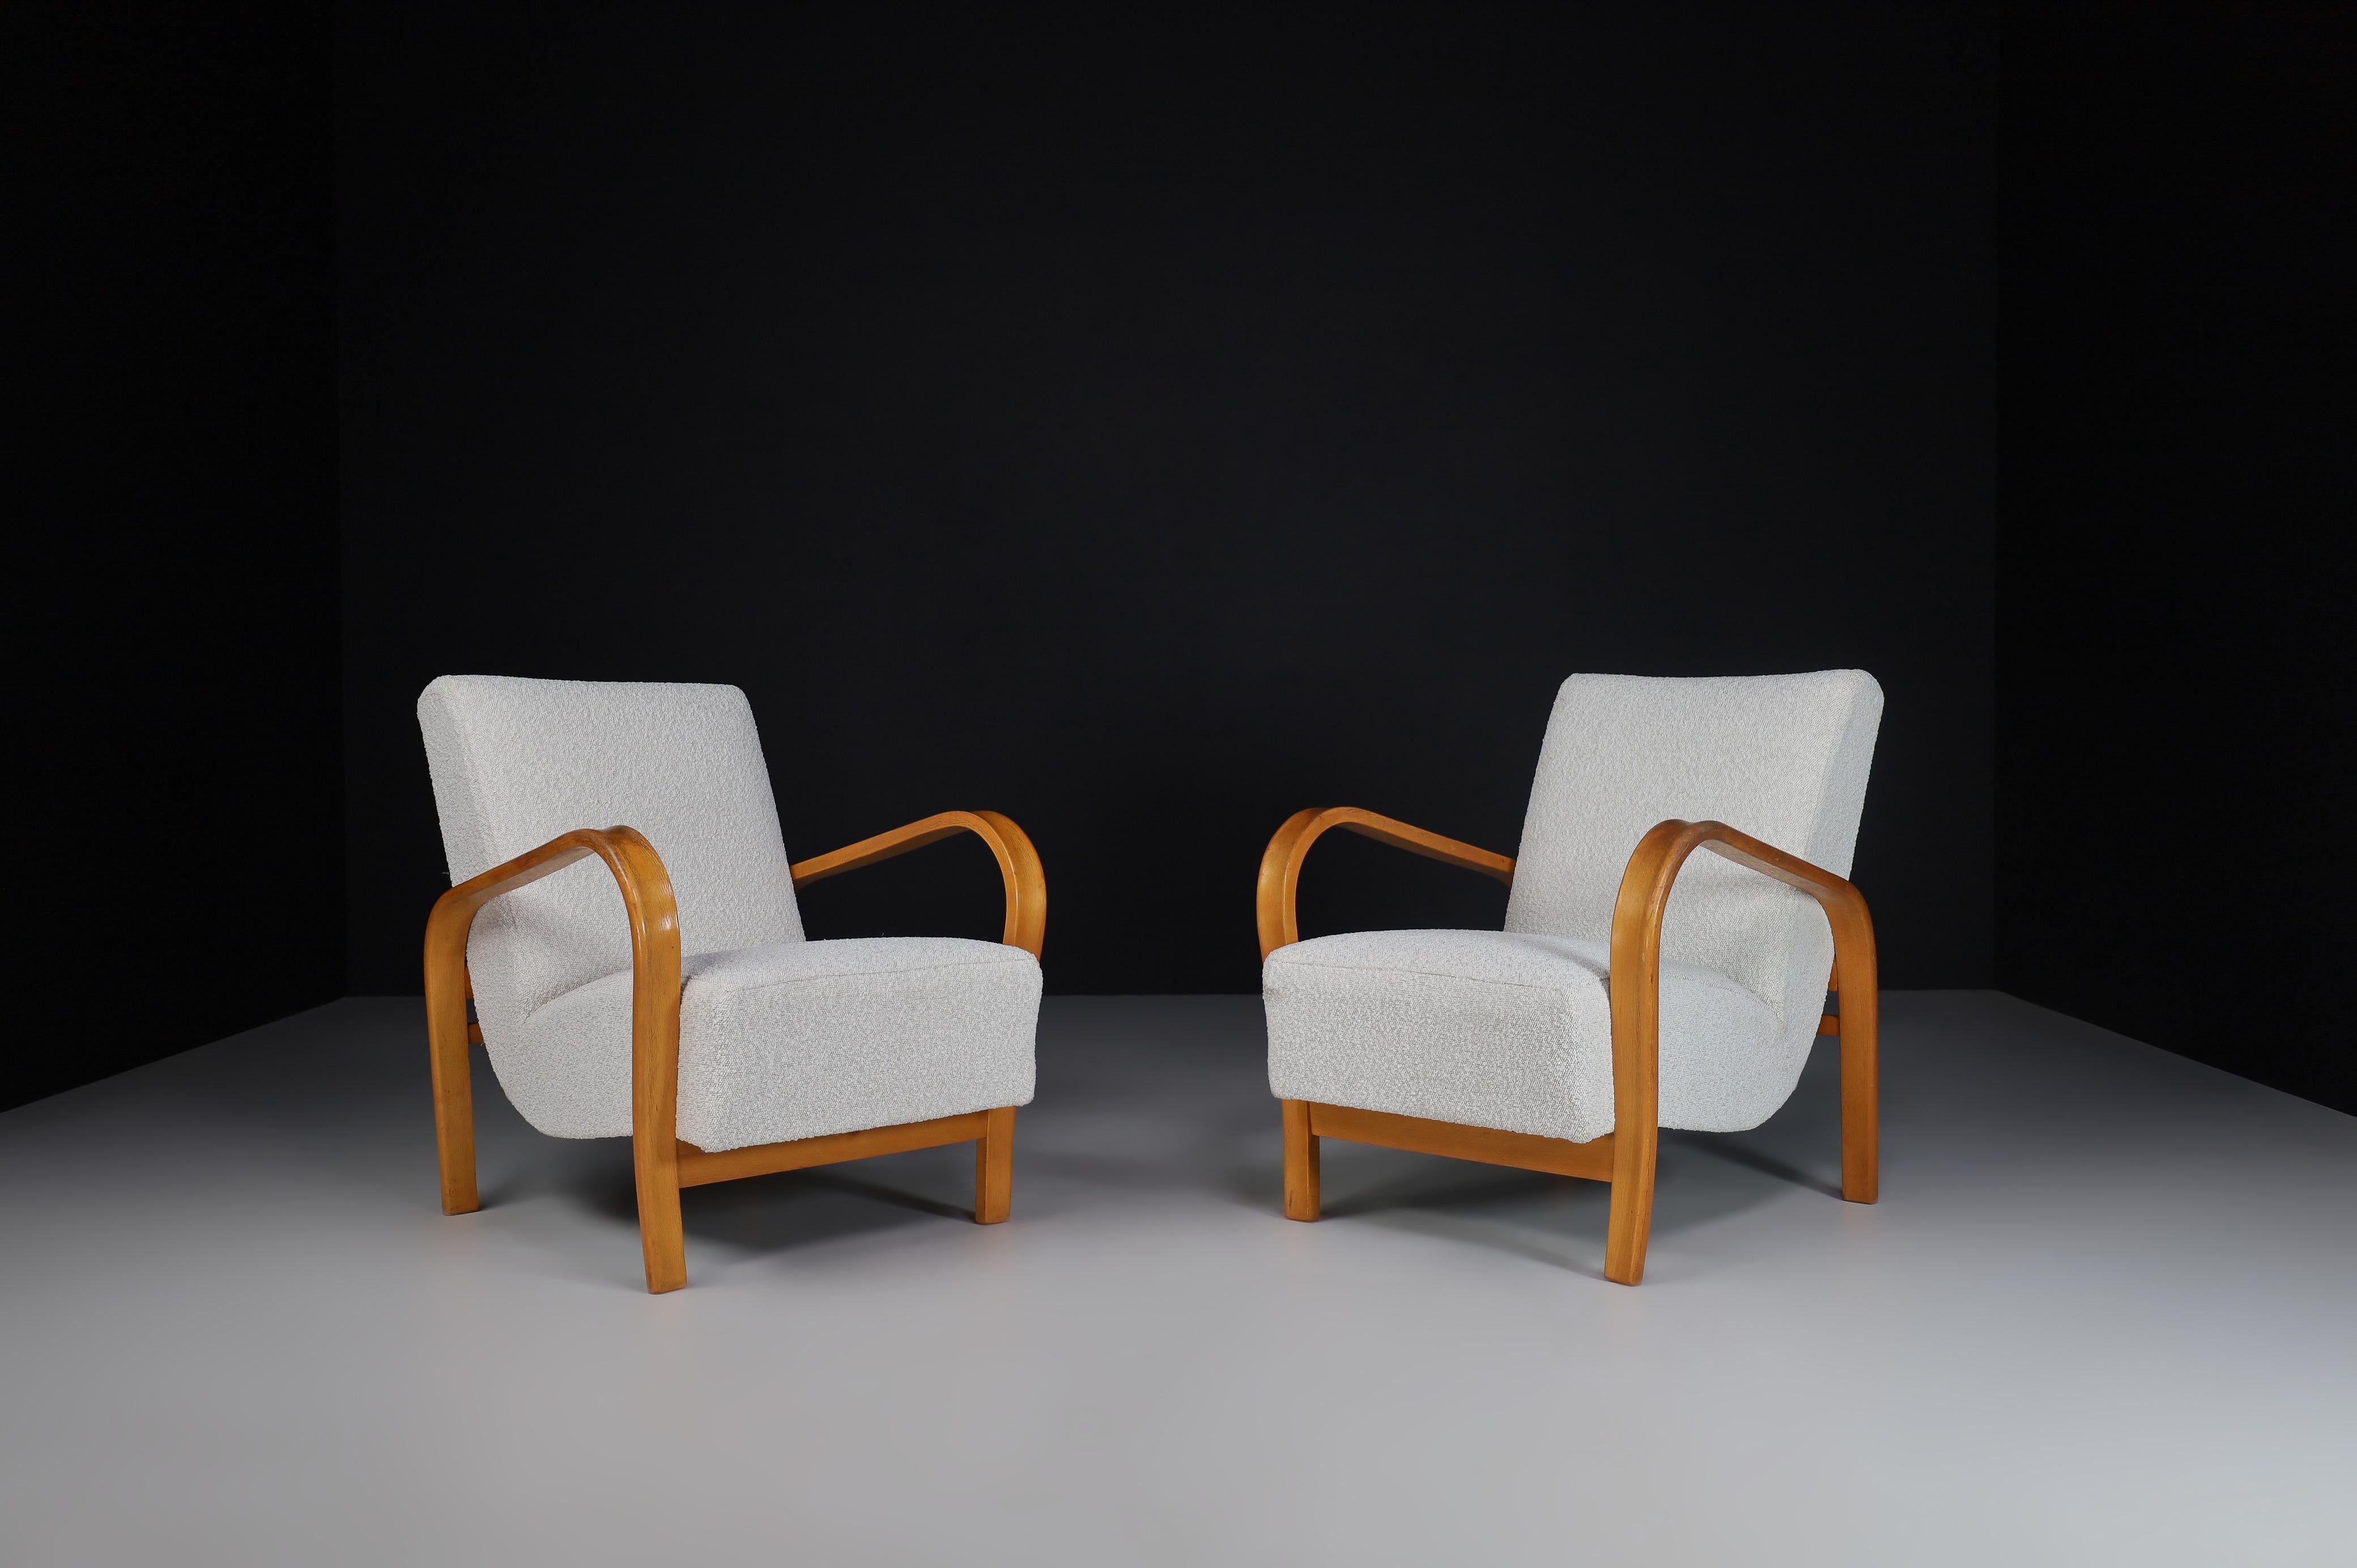 Karel Koželka & Antonín Kropáček Fauteuils en bois courbé.

Ces chaises iconiques de Tchécoslovaquie, datant de 1940, conçues par Karel Koželka et Antonín Kropáček, sont une référence pour le design du milieu du siècle en Europe centrale. Une